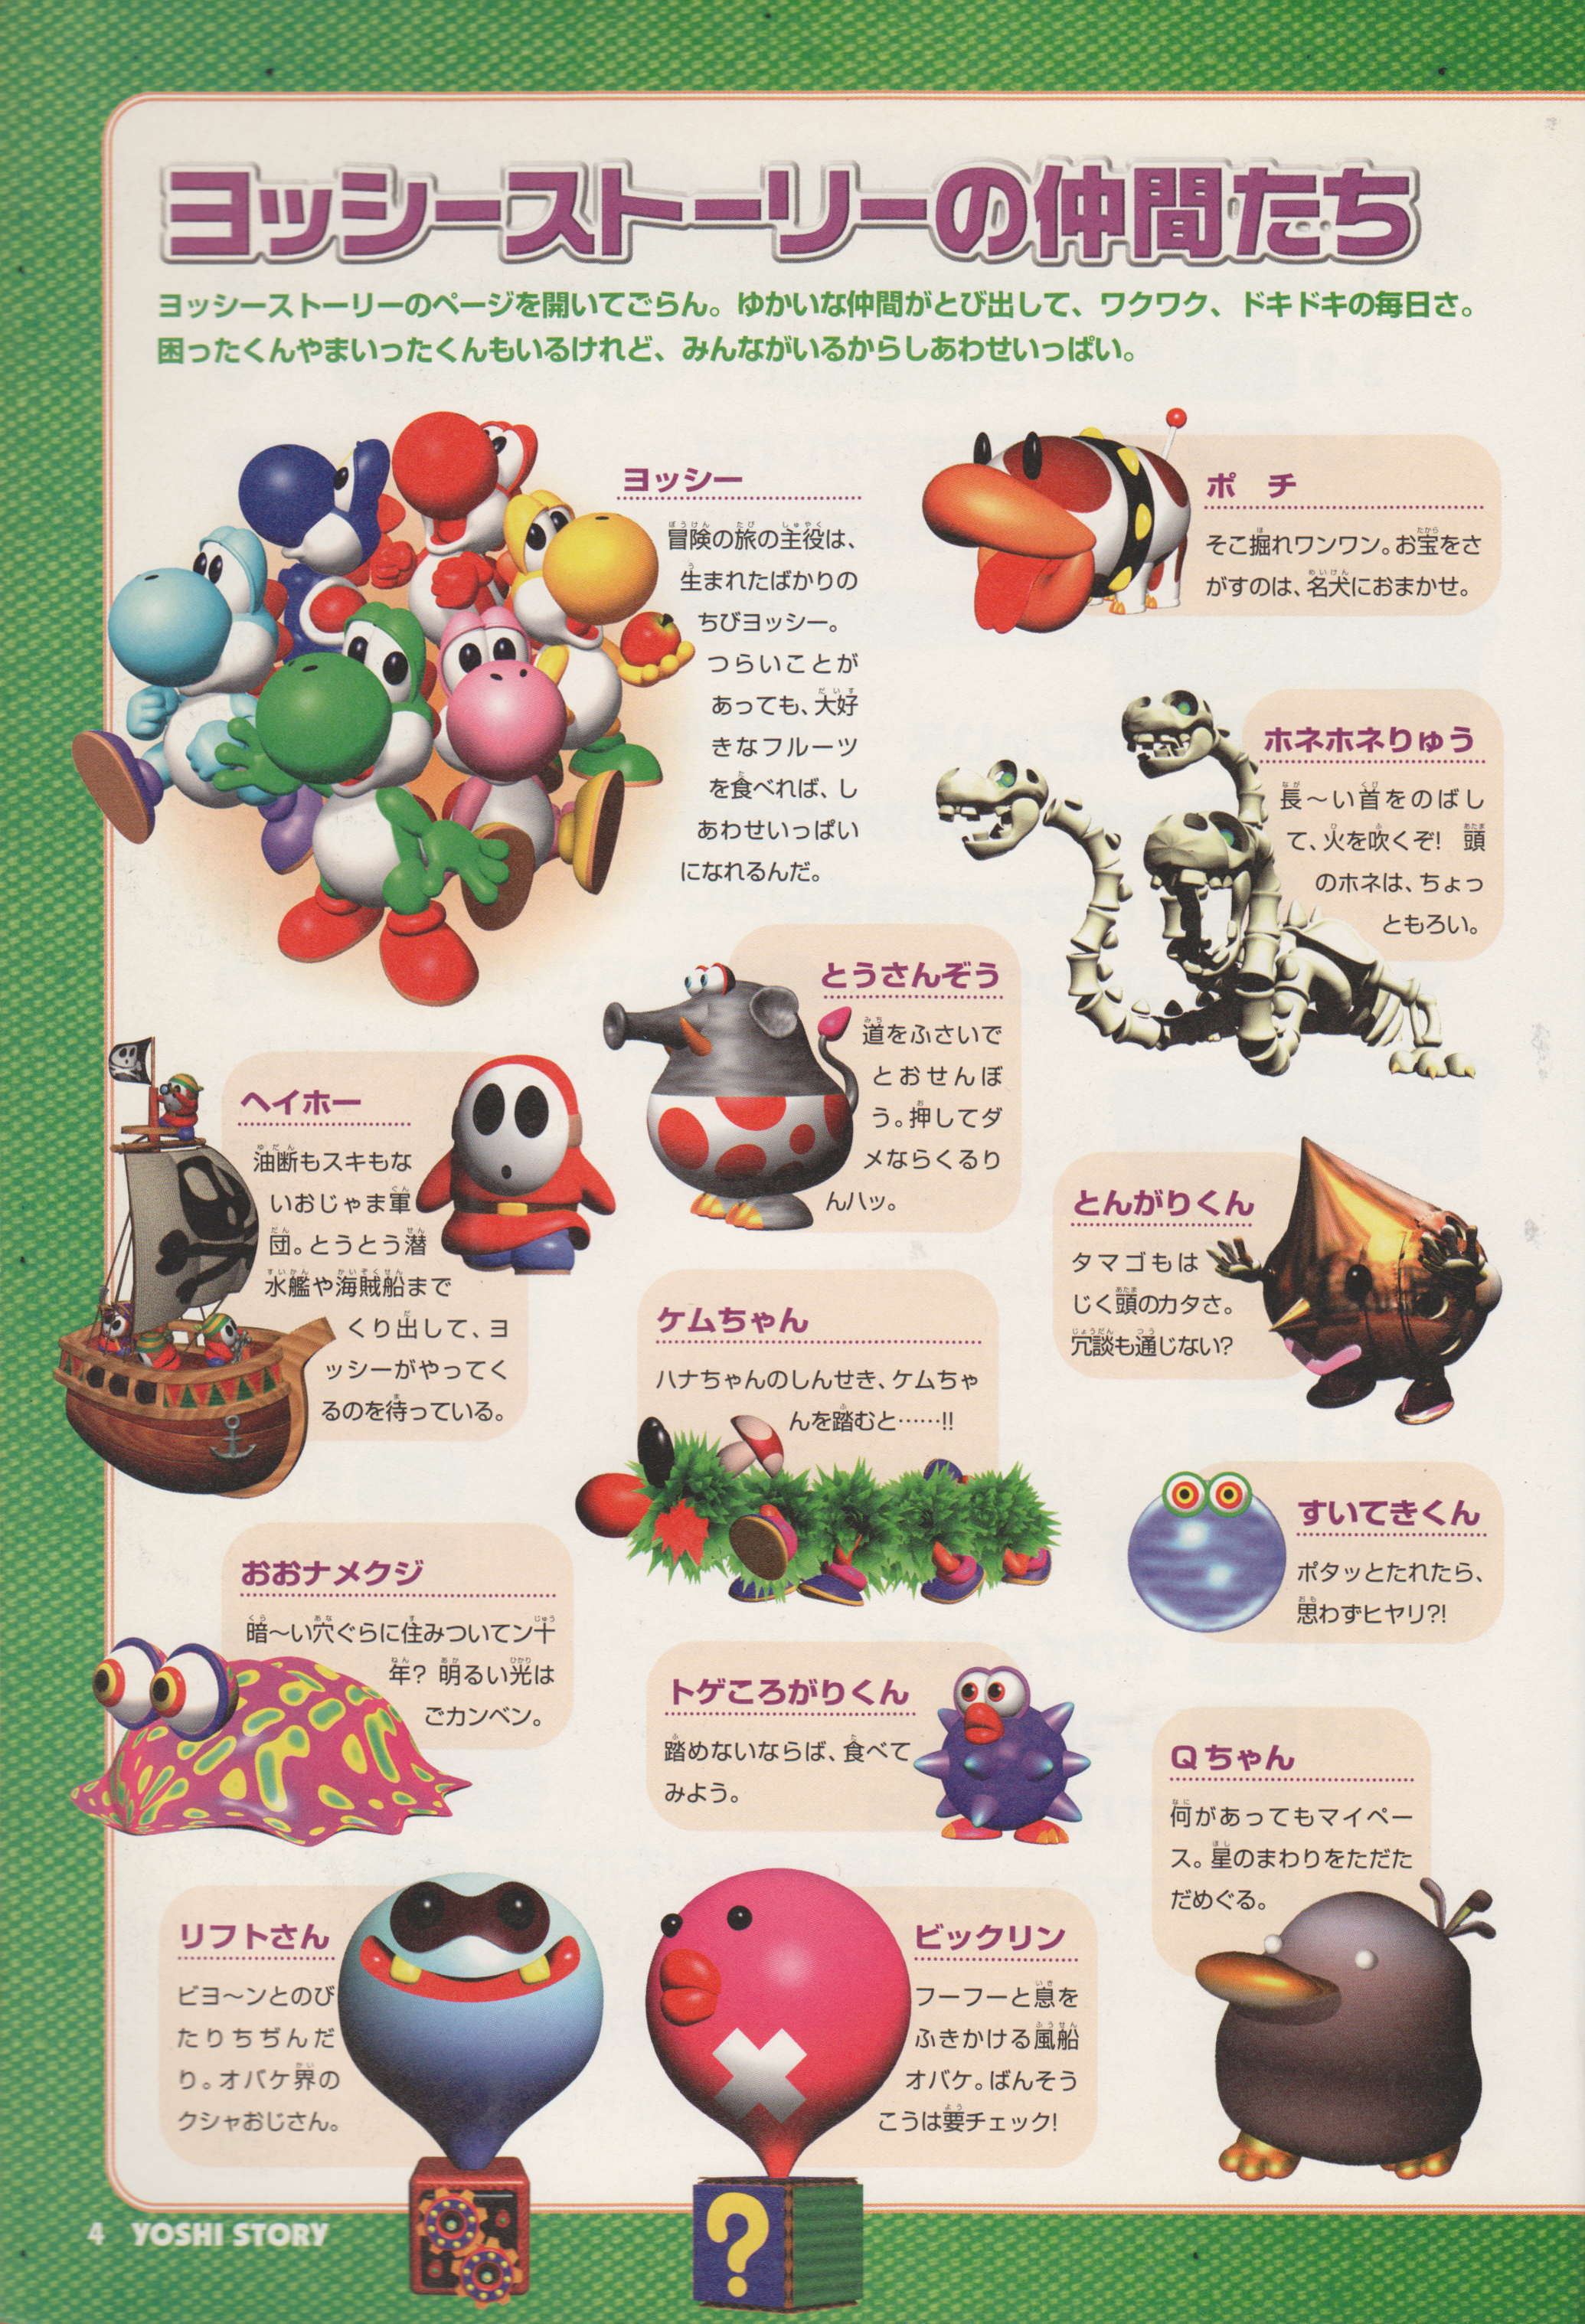 Bone Dragon - Super Mario Wiki, the Mario encyclopedia2070 x 3035